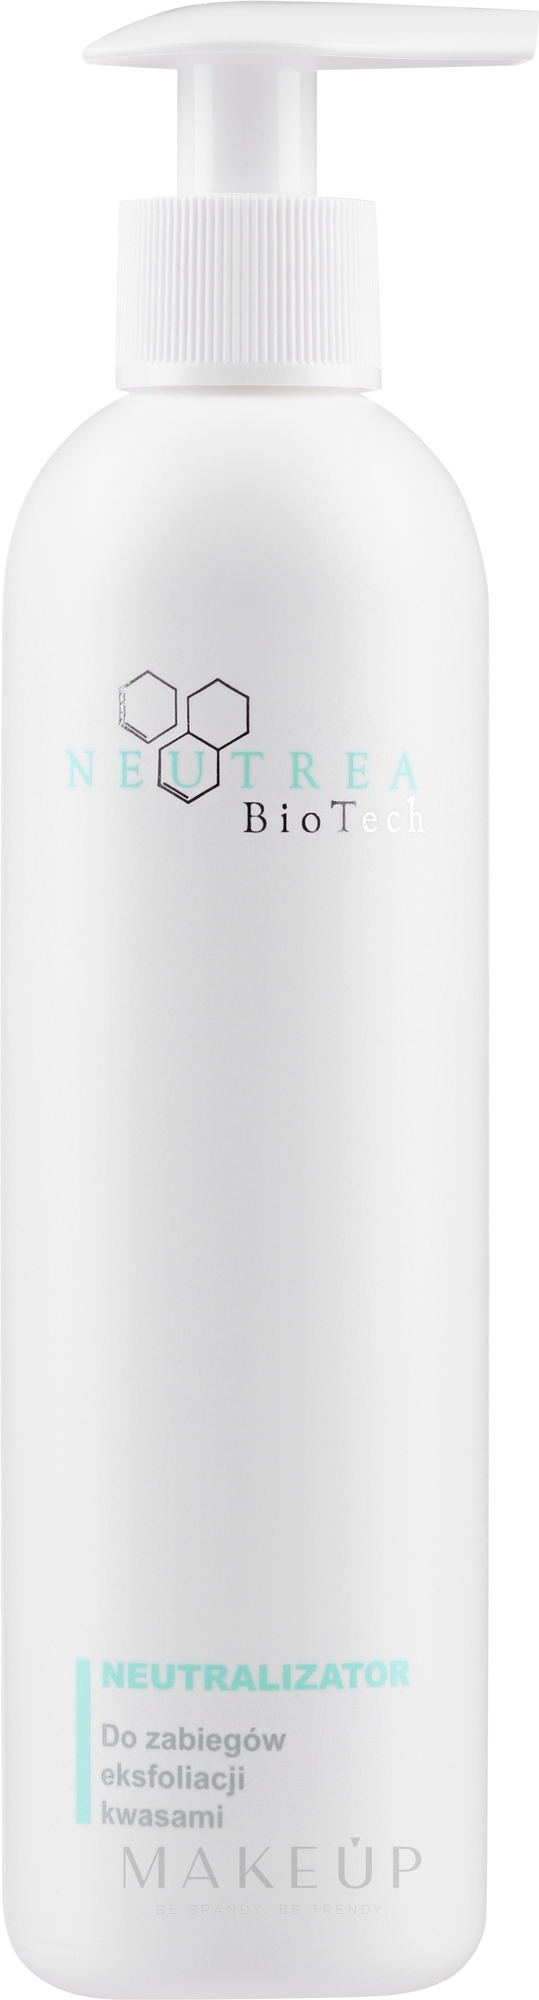 Neutralisator - Neutrea BioTech Peel Neutralizer — Bild 250 ml